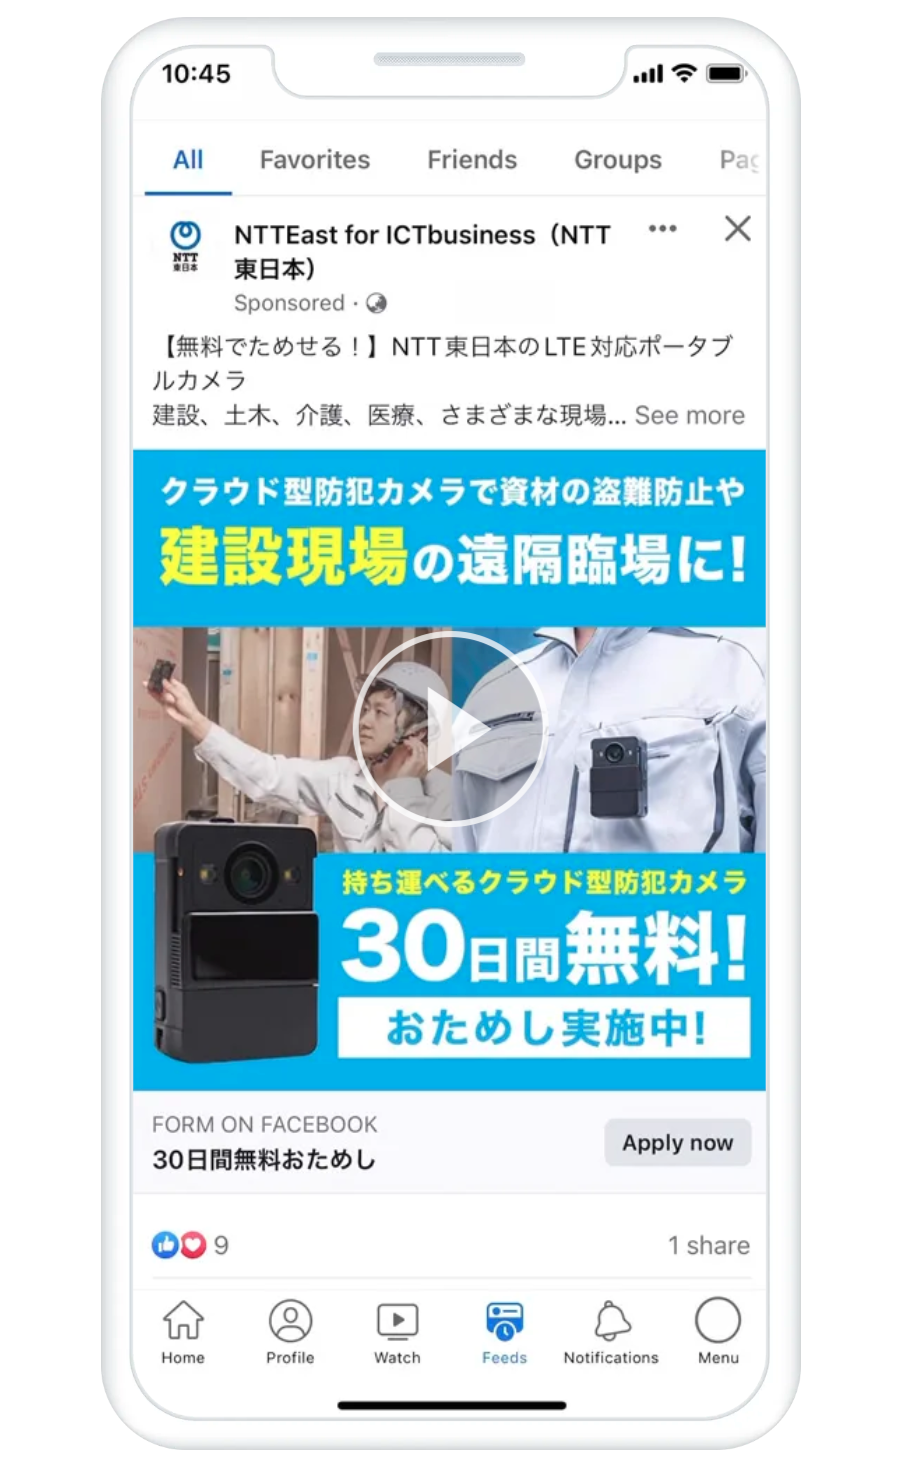 リード獲得広告 Facebook事例 NTT東日本